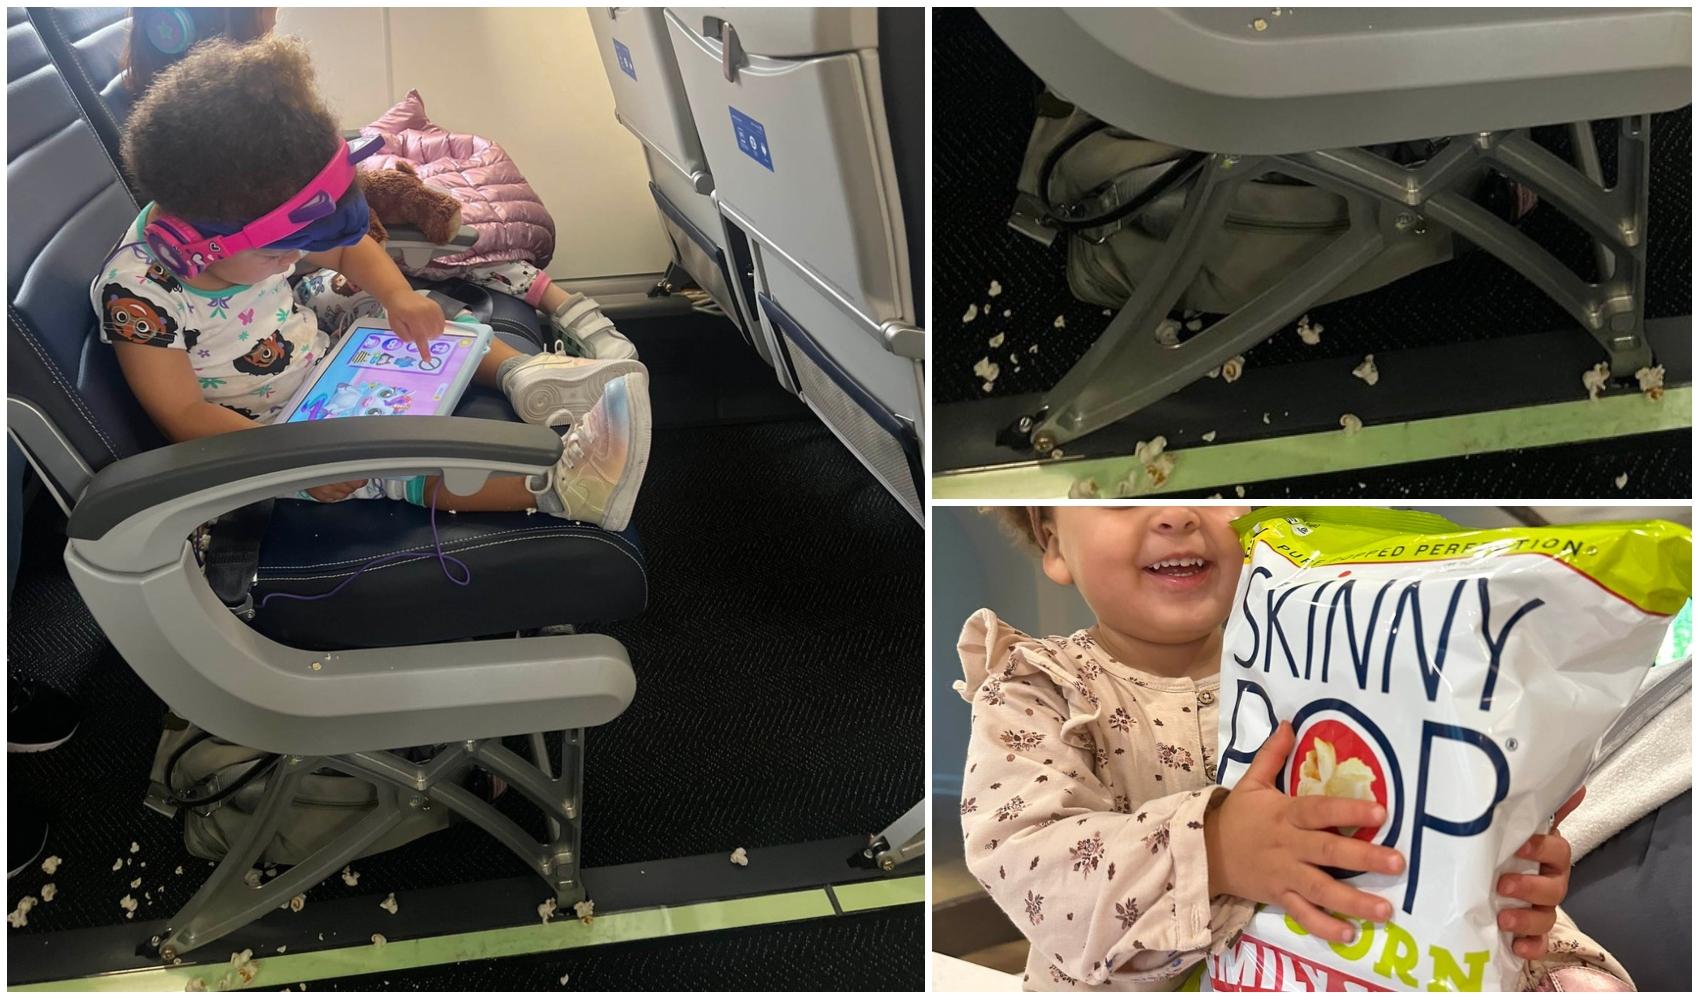 colaj foto cu o fetita care se uita pe tableta in avion, poza cu fetita mancand popcorn si poza cu un scaun de avion